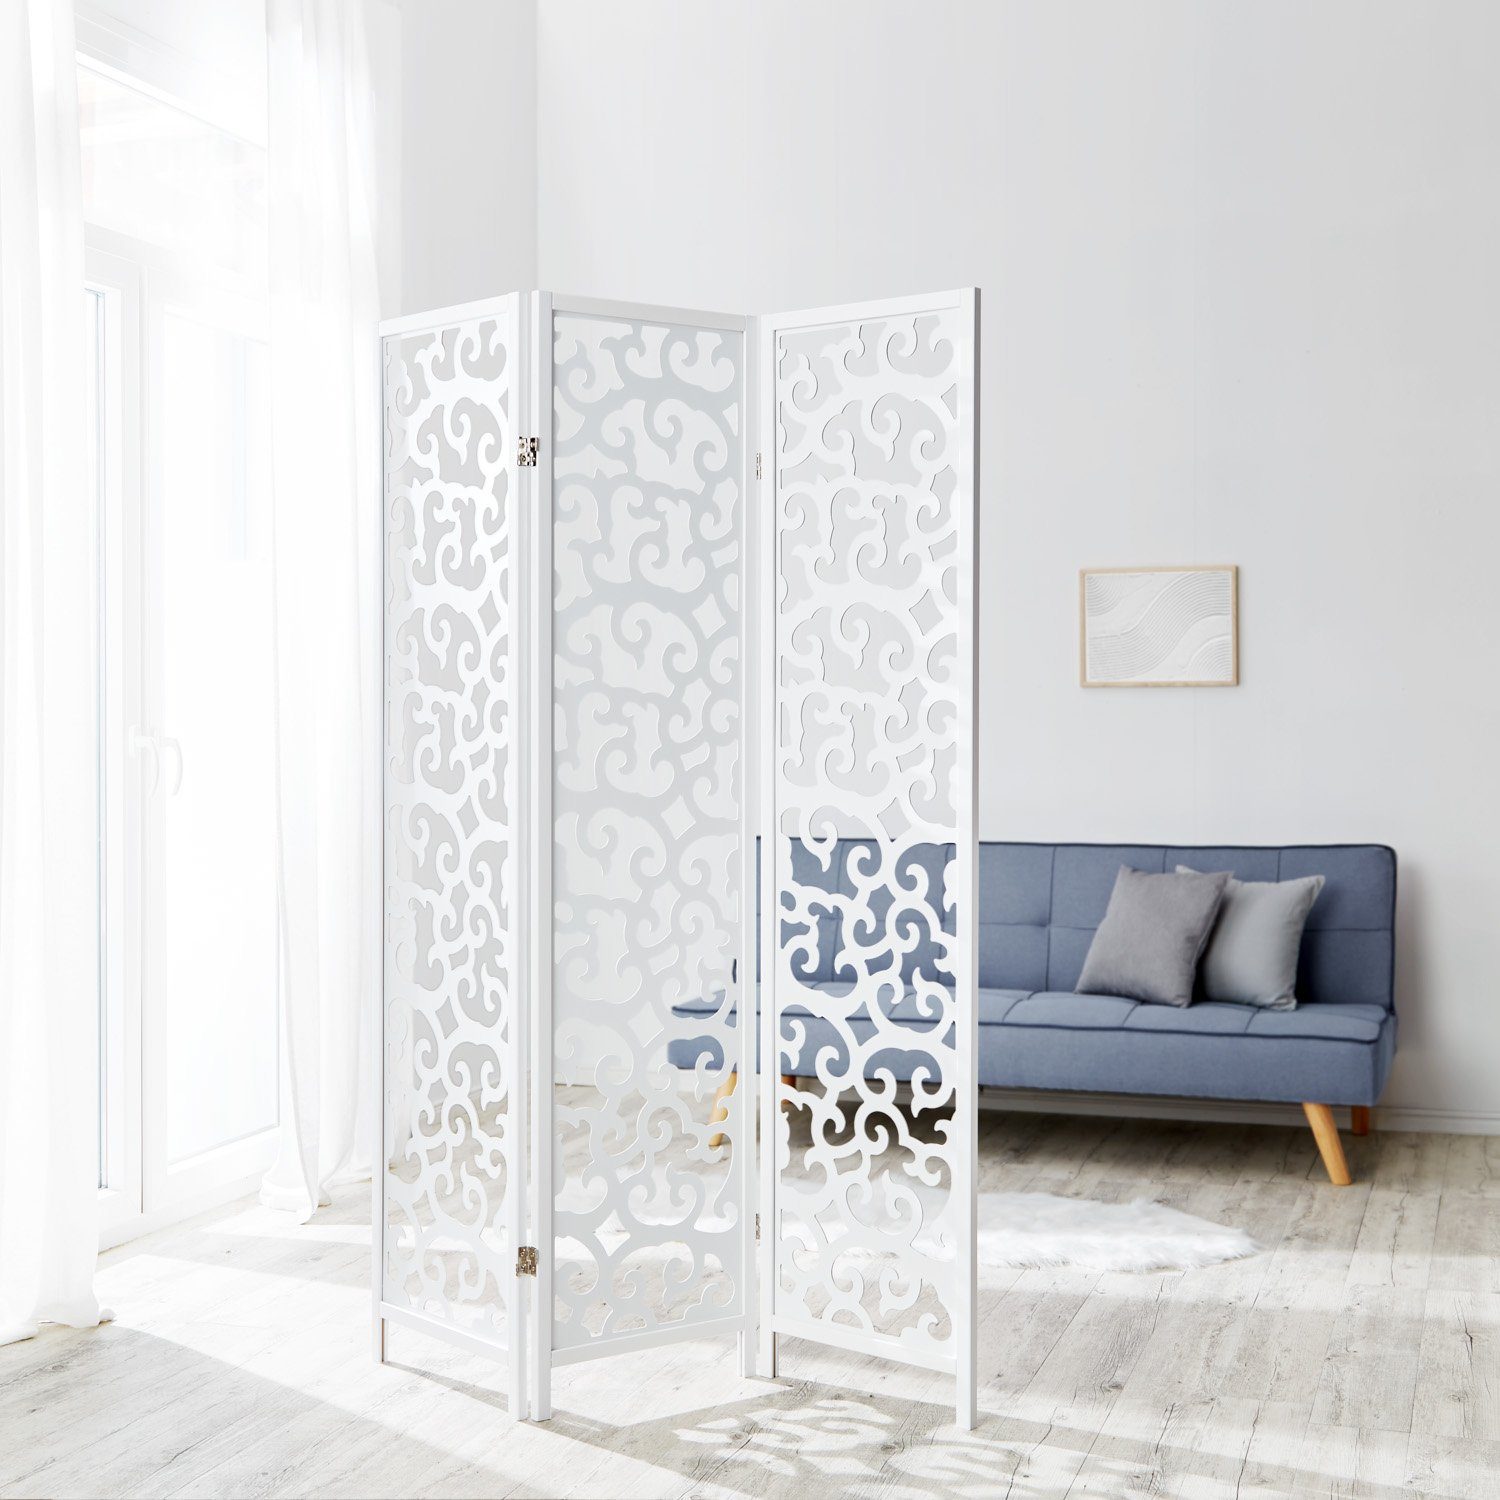 Sichtschutz spanische Wand Raumteiler Weiß Homestyle4u Paravent Trennwand Holz